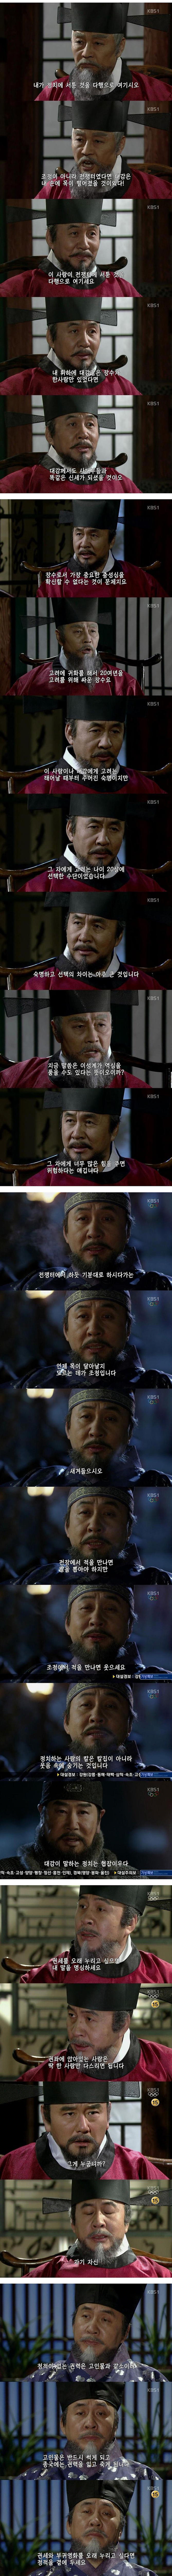 한국 사극에서 보기 힘들었던 독특한 악역